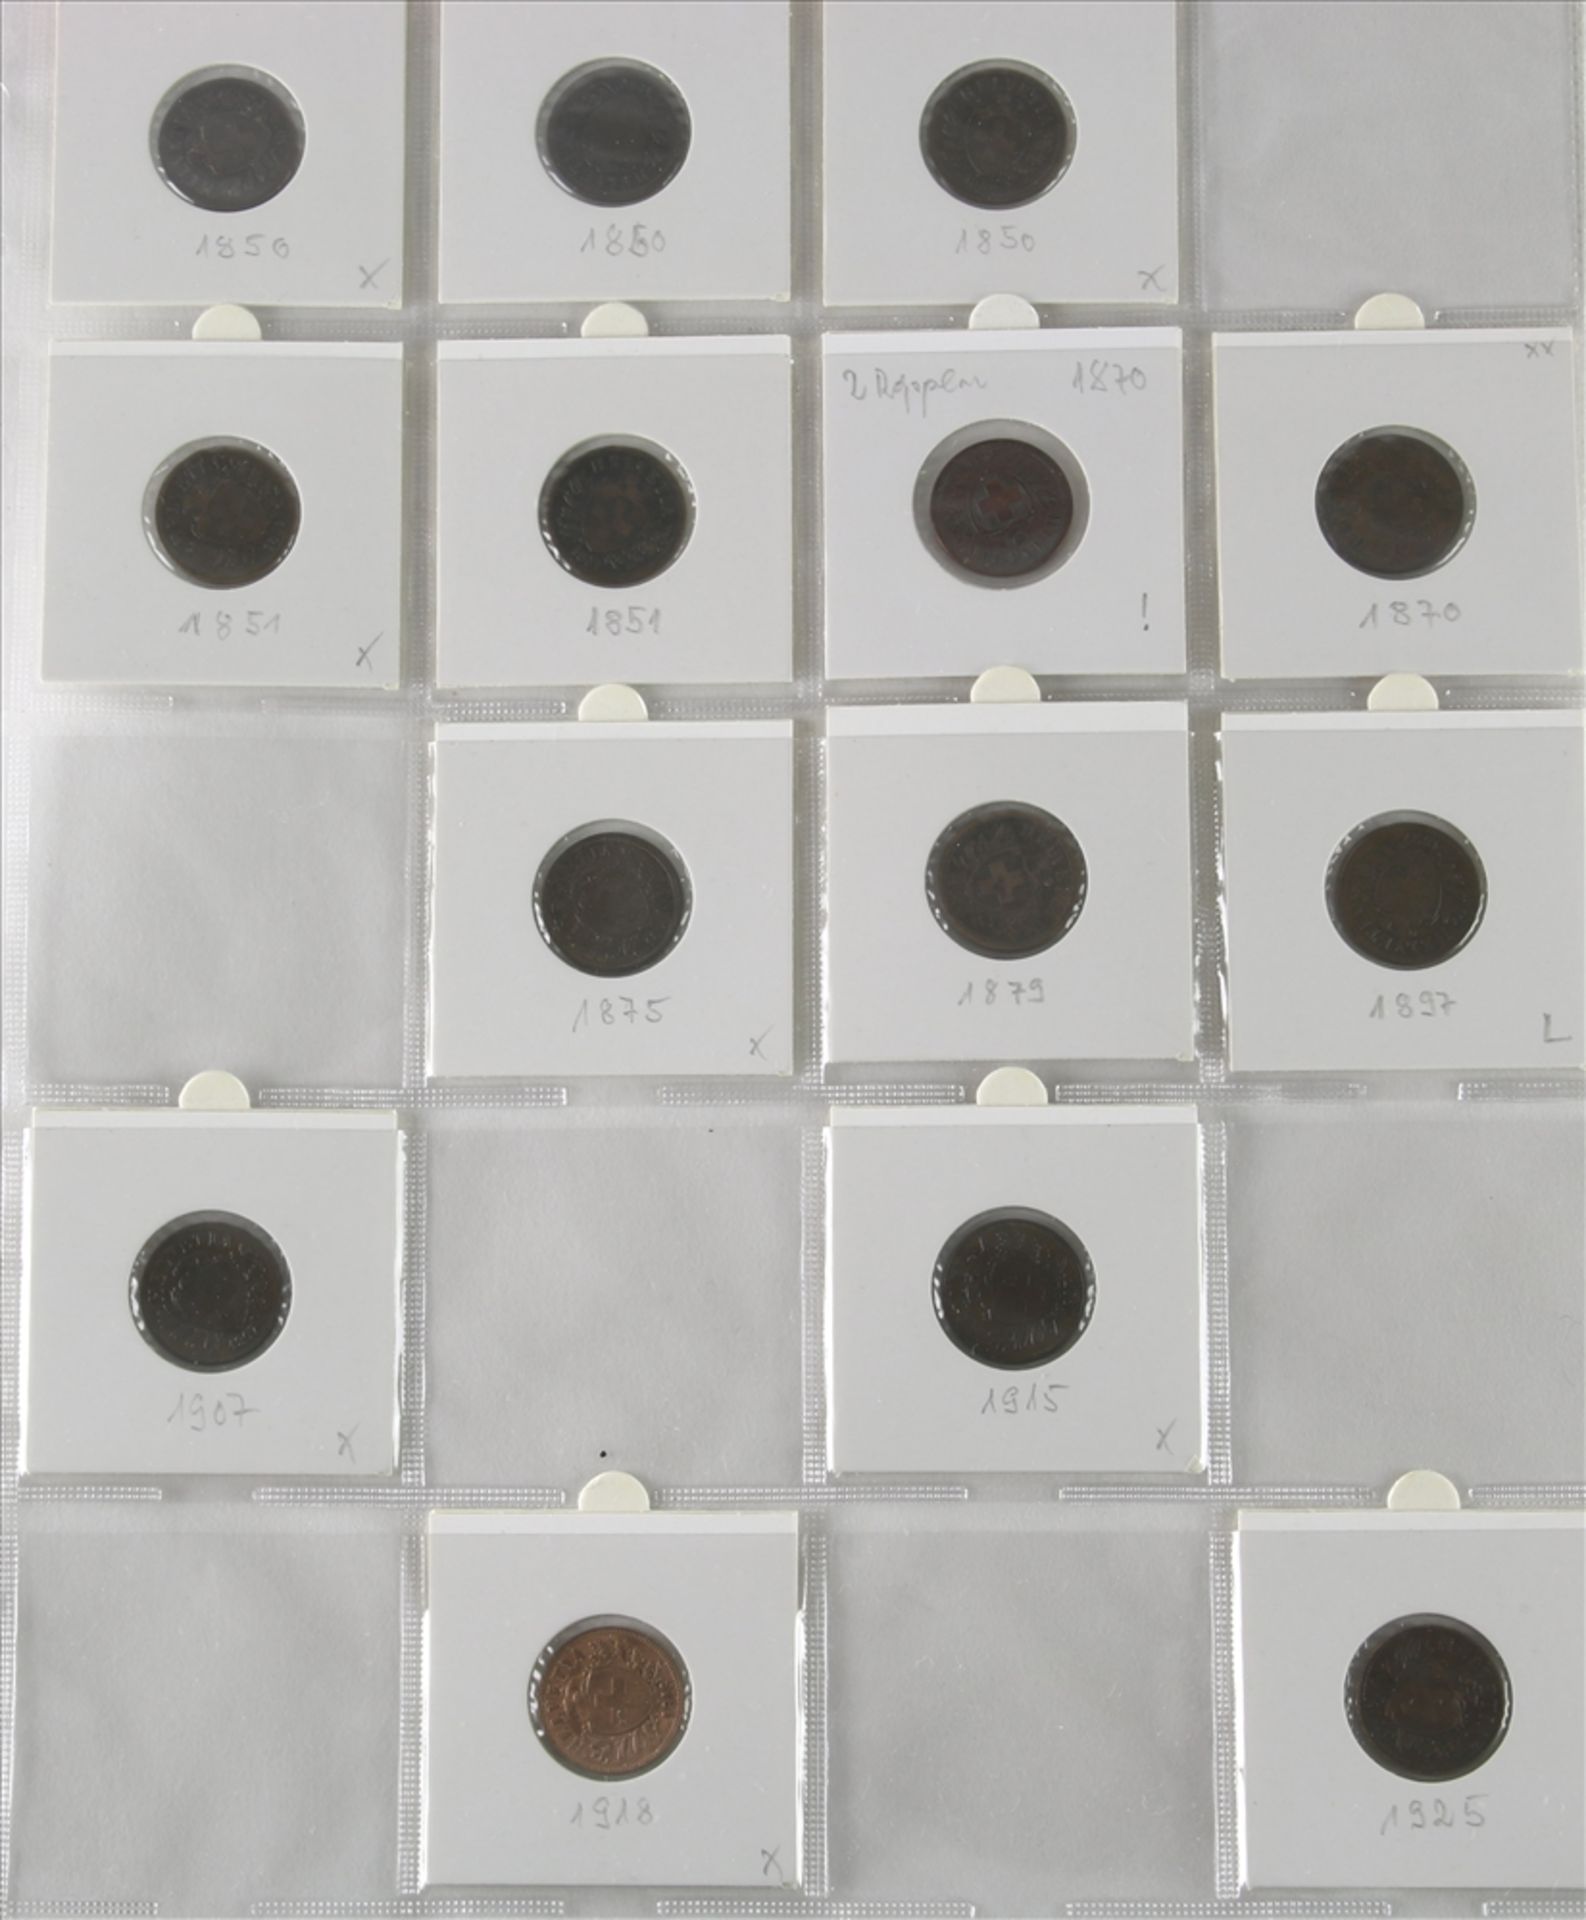 Konvolut Münzen 1-5-Rappen Stücke, Schweiz ab 1850. Unterschiedliche Jahrgänge und Zustände. U.a. - Bild 5 aus 5